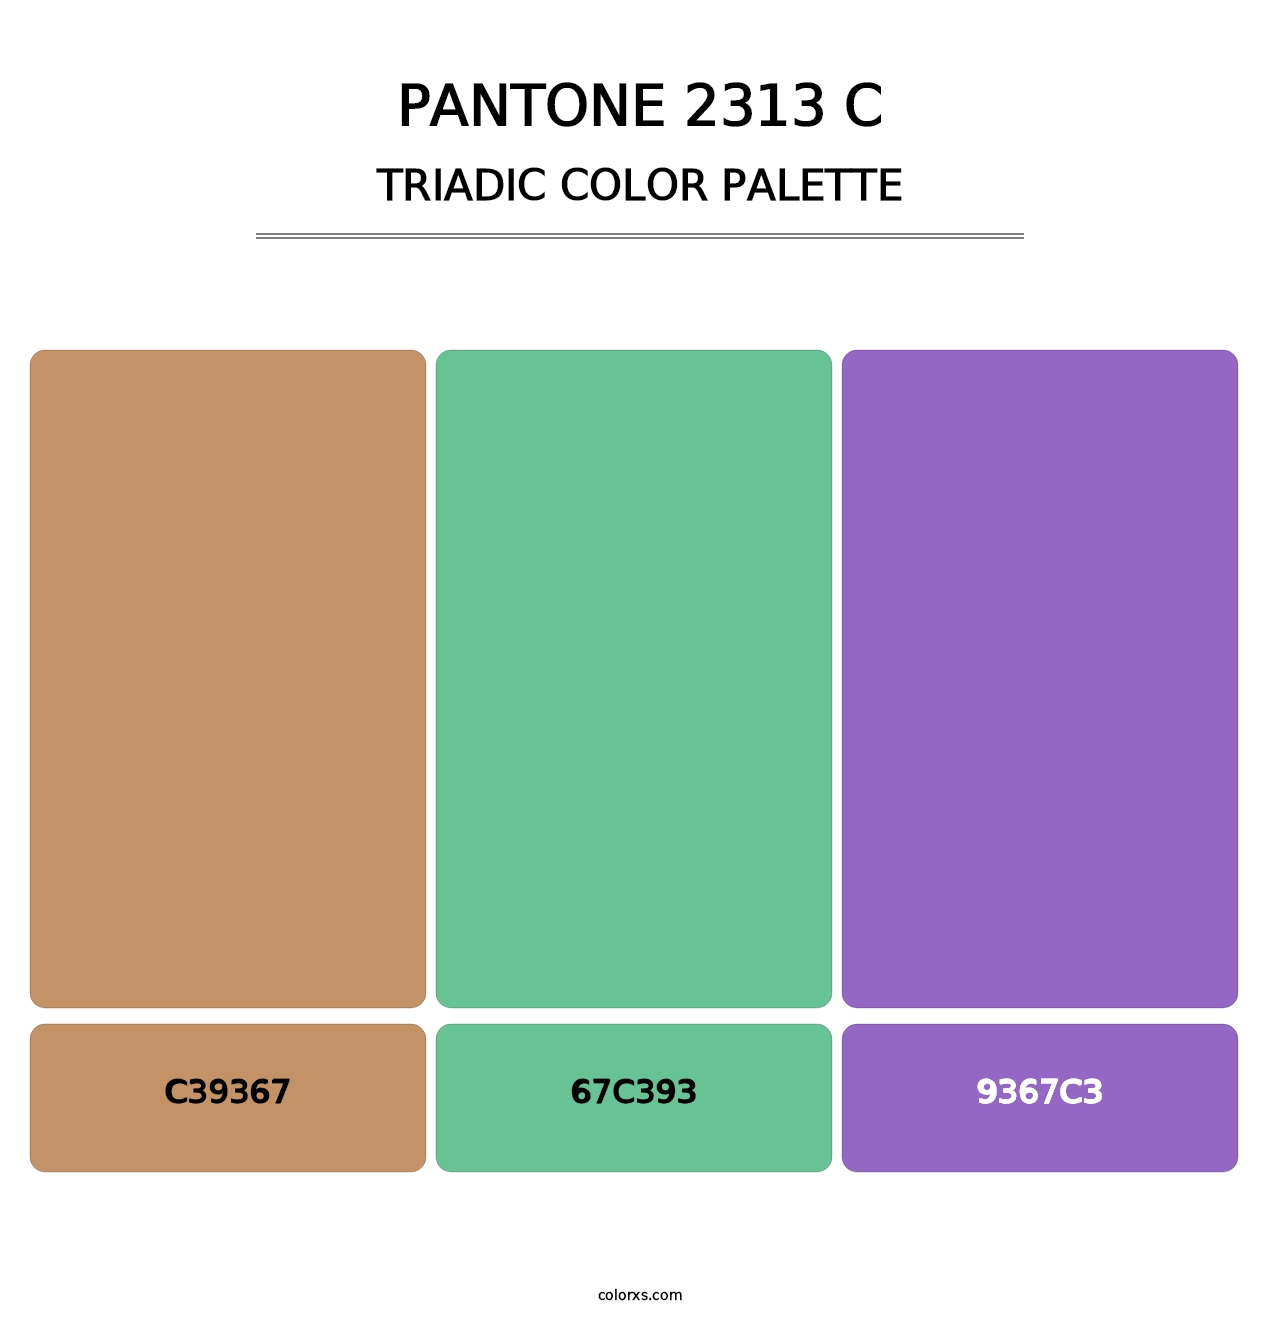 PANTONE 2313 C - Triadic Color Palette